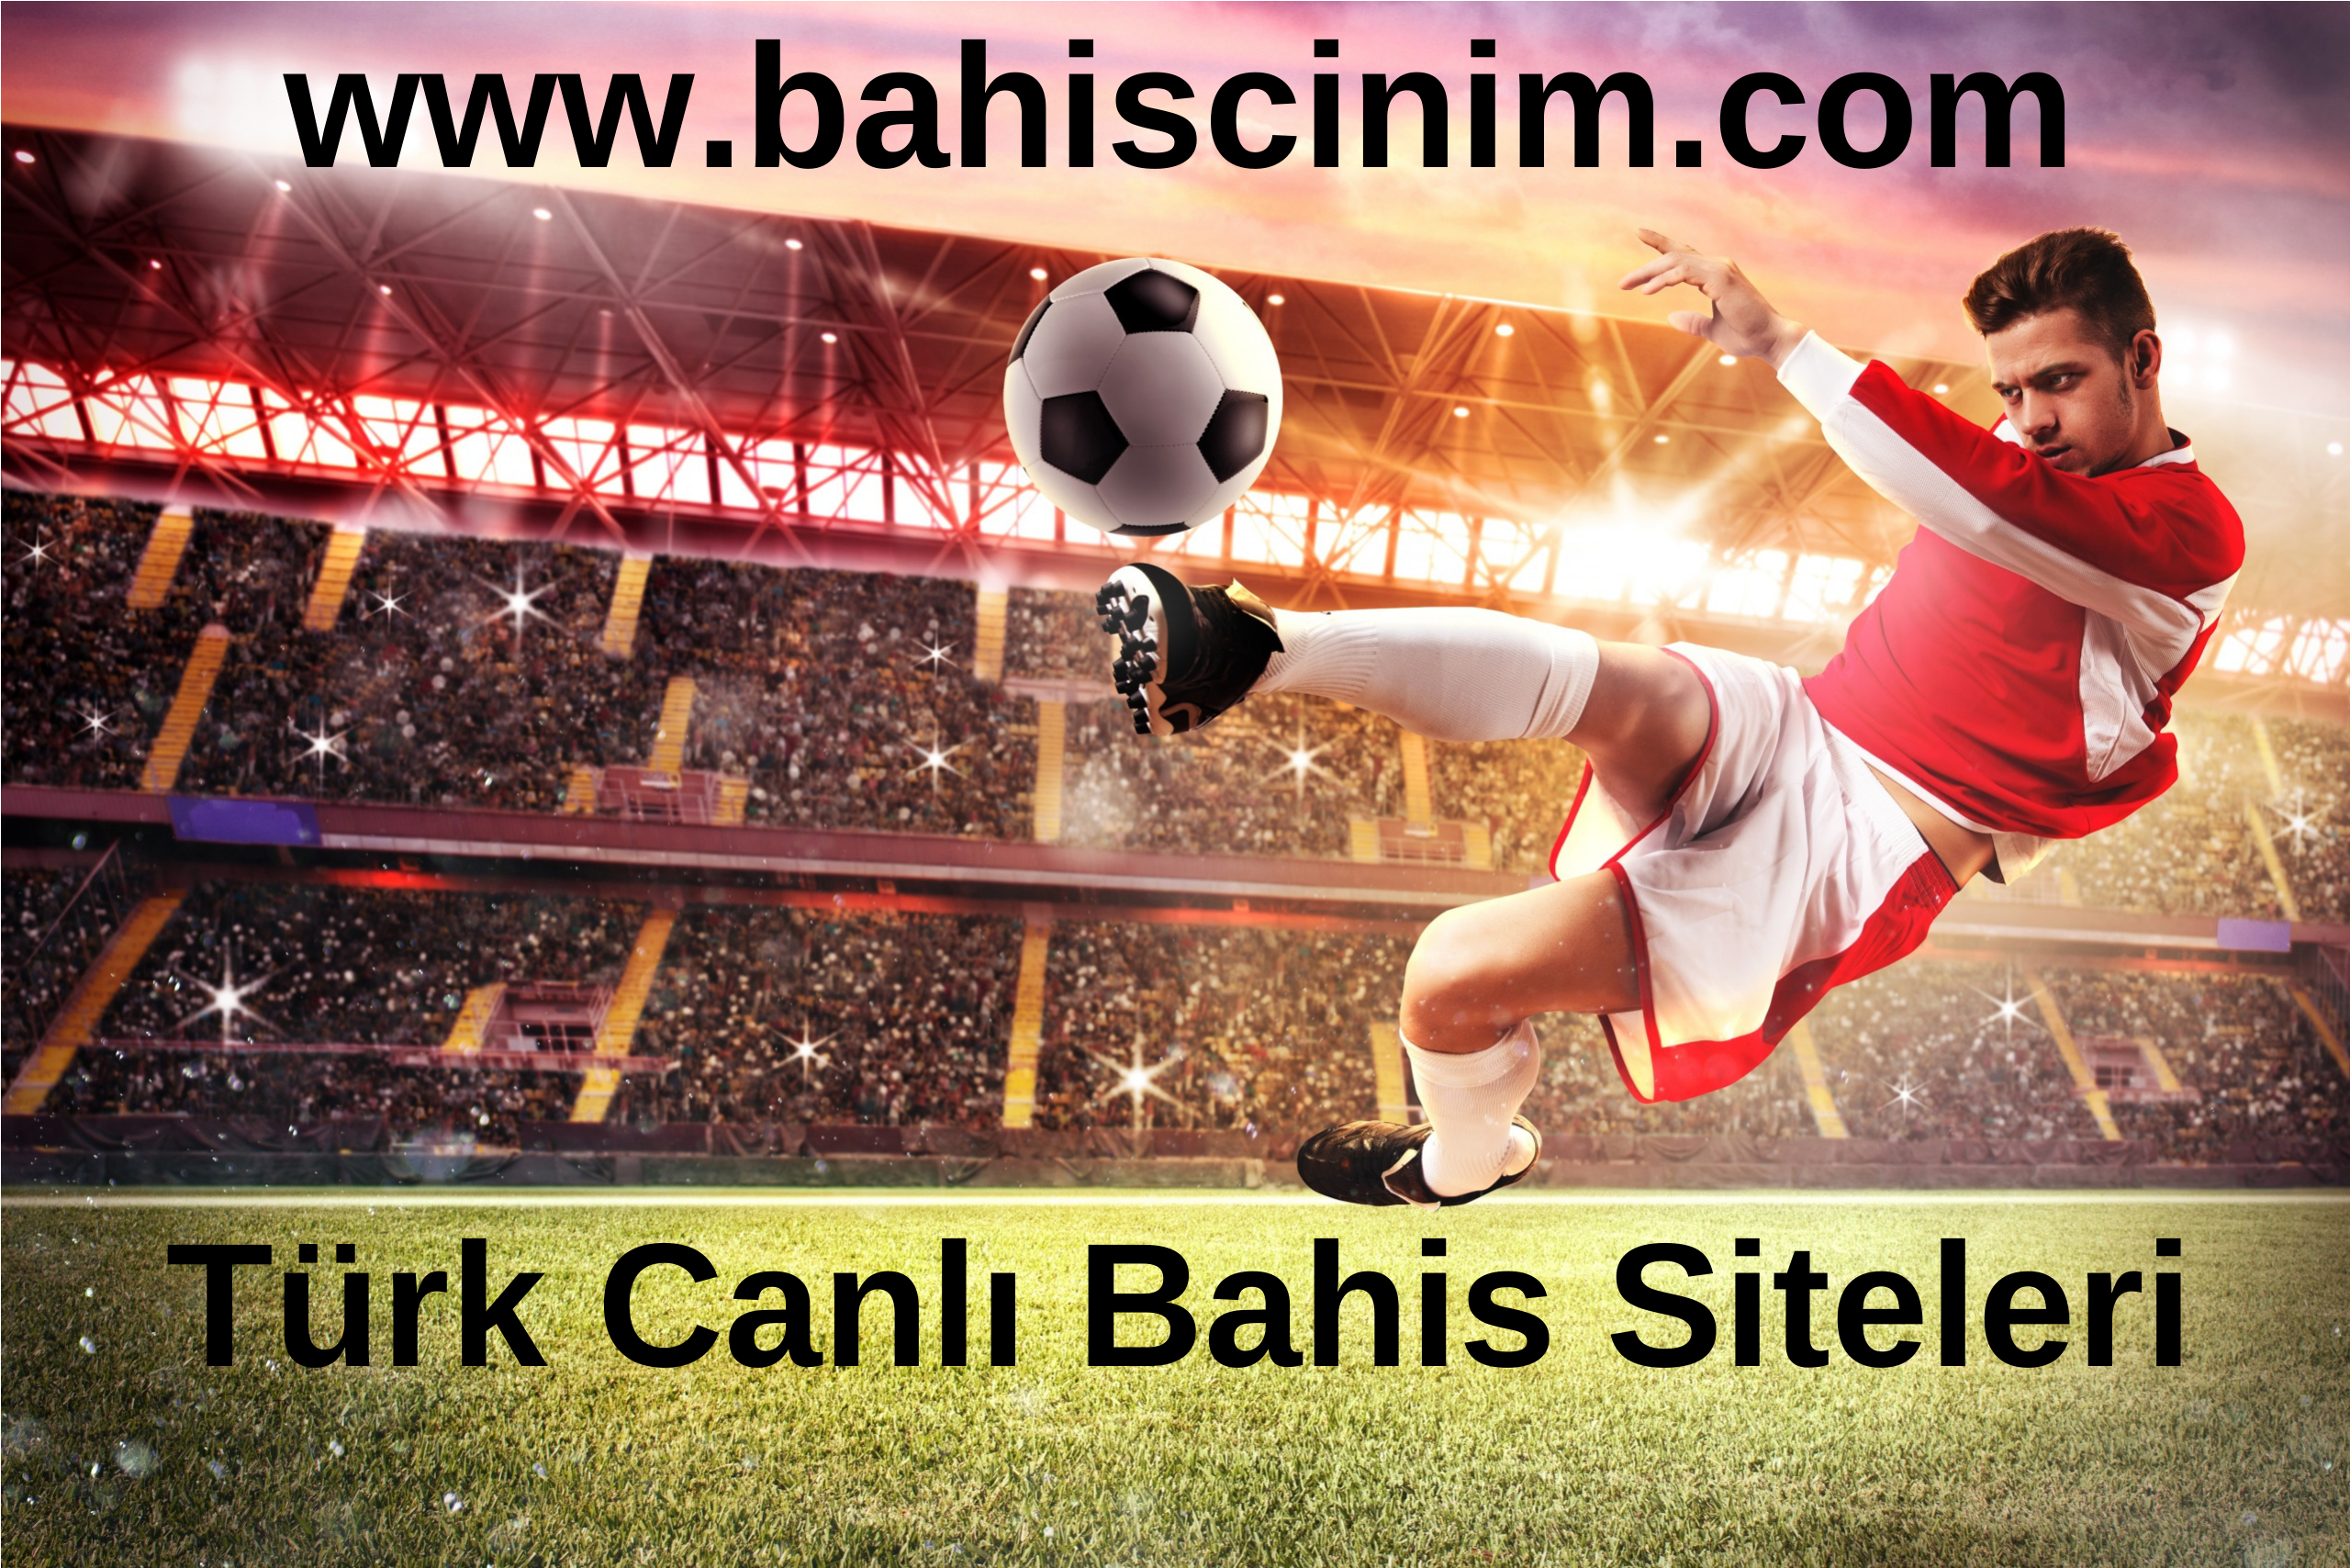 Canlı Türk Bahis Siteleri www.bahiscinim.com